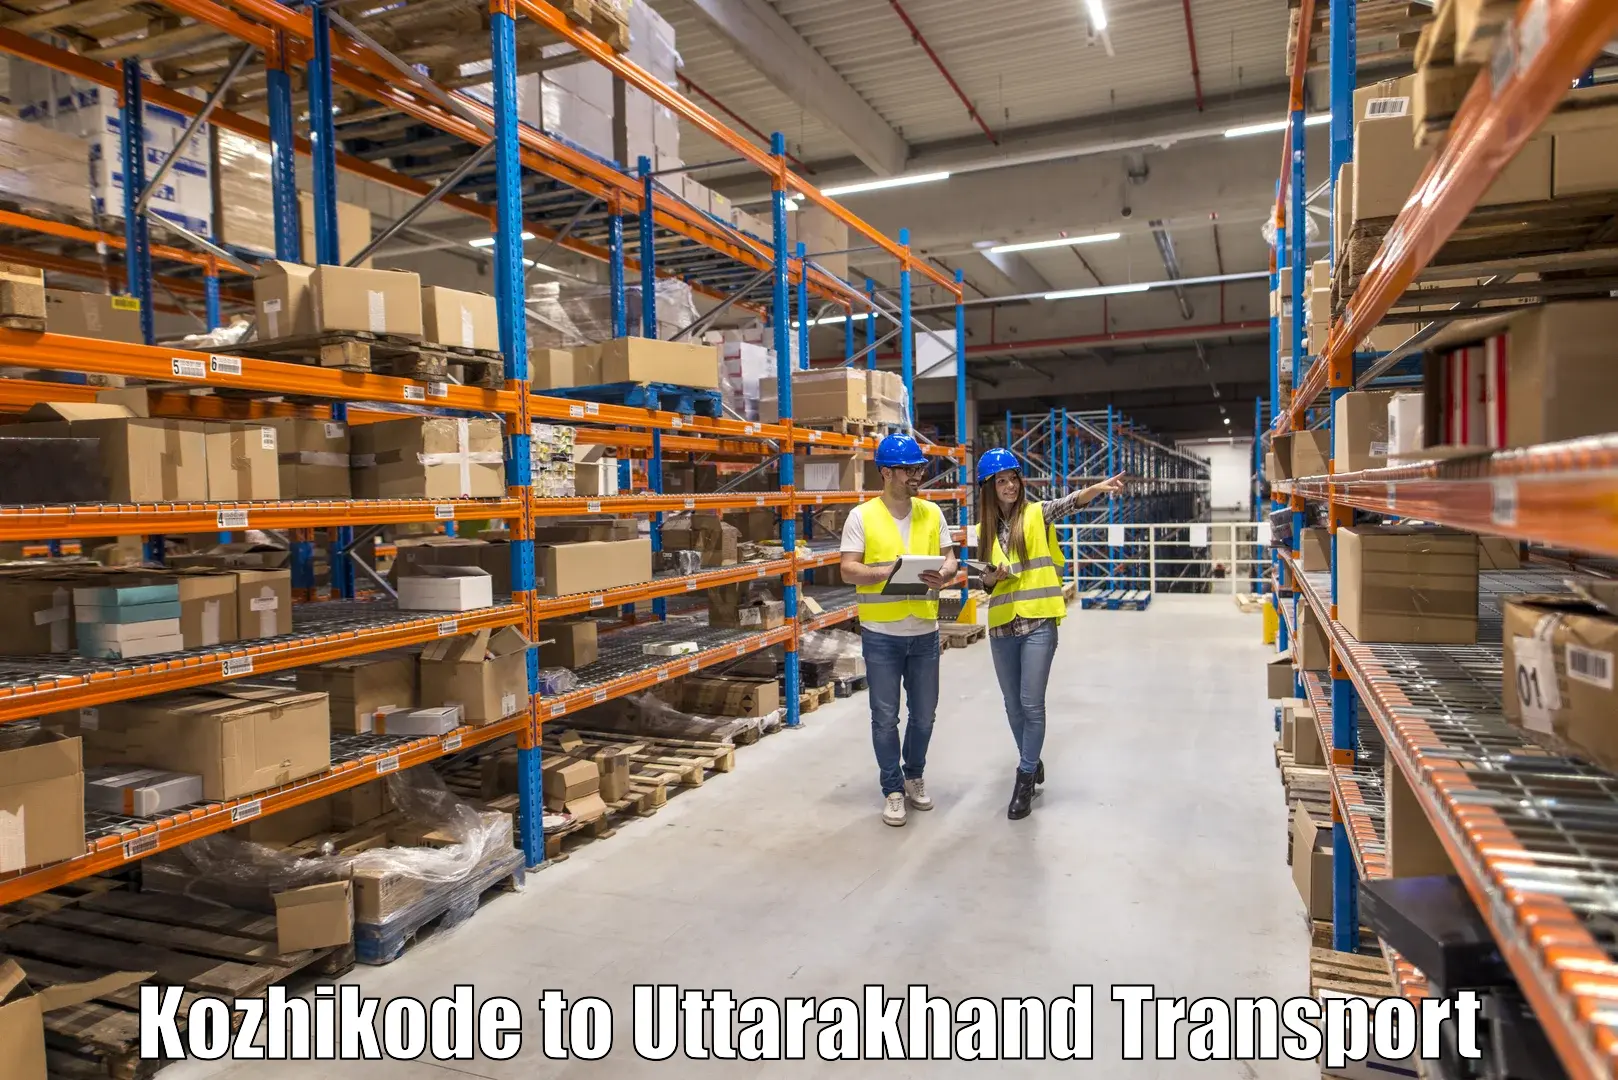 Two wheeler transport services Kozhikode to Uttarakhand